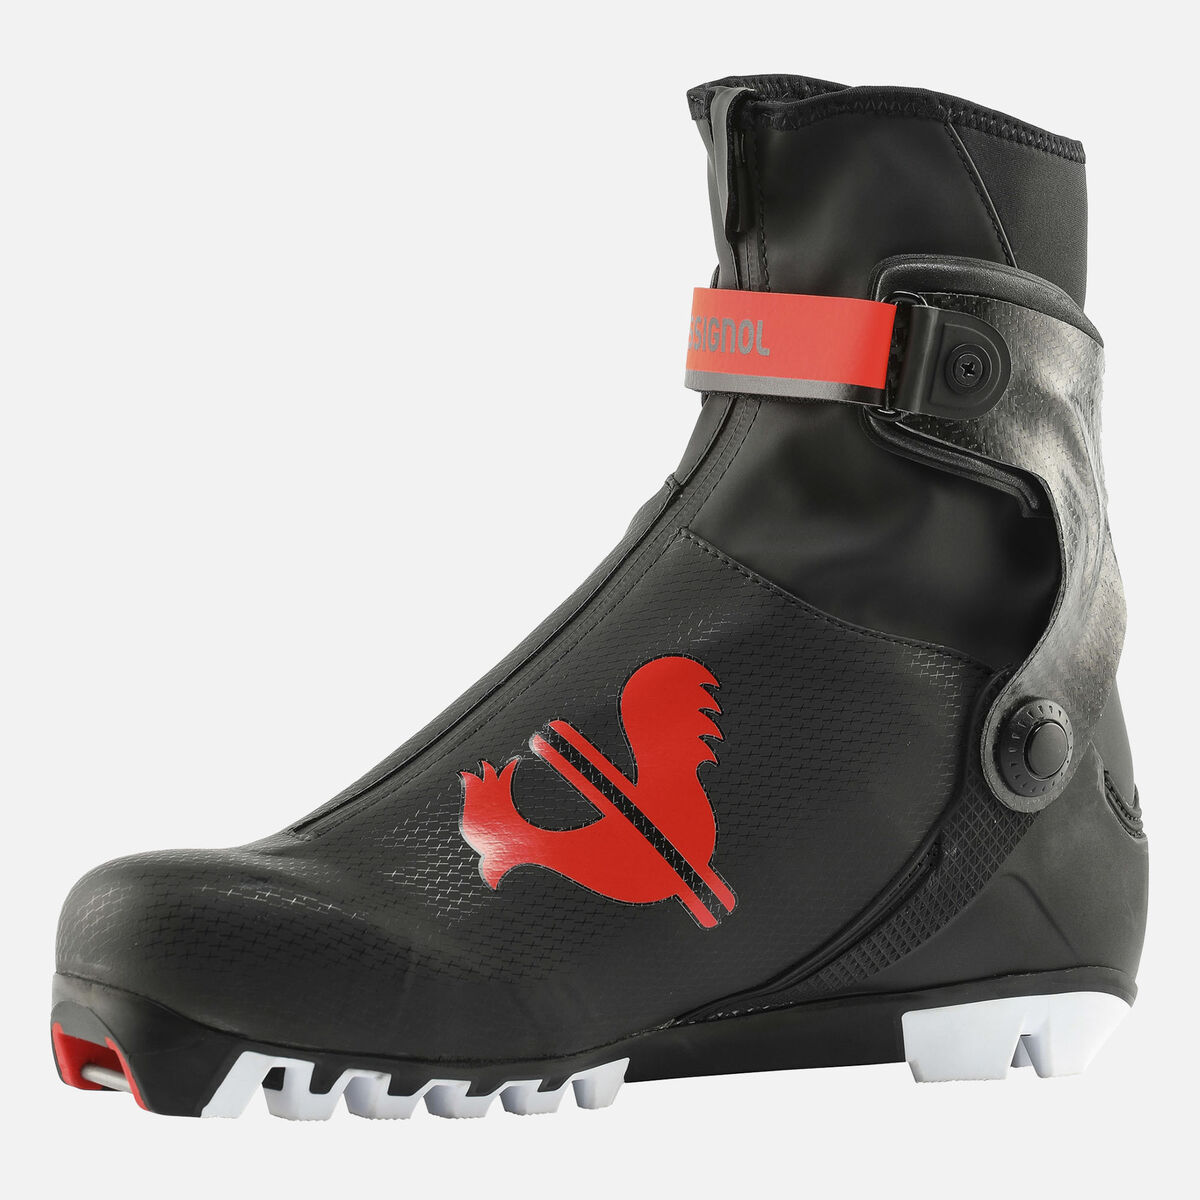 Chaussures de ski nordique Racing Unisexe X-ium Skate